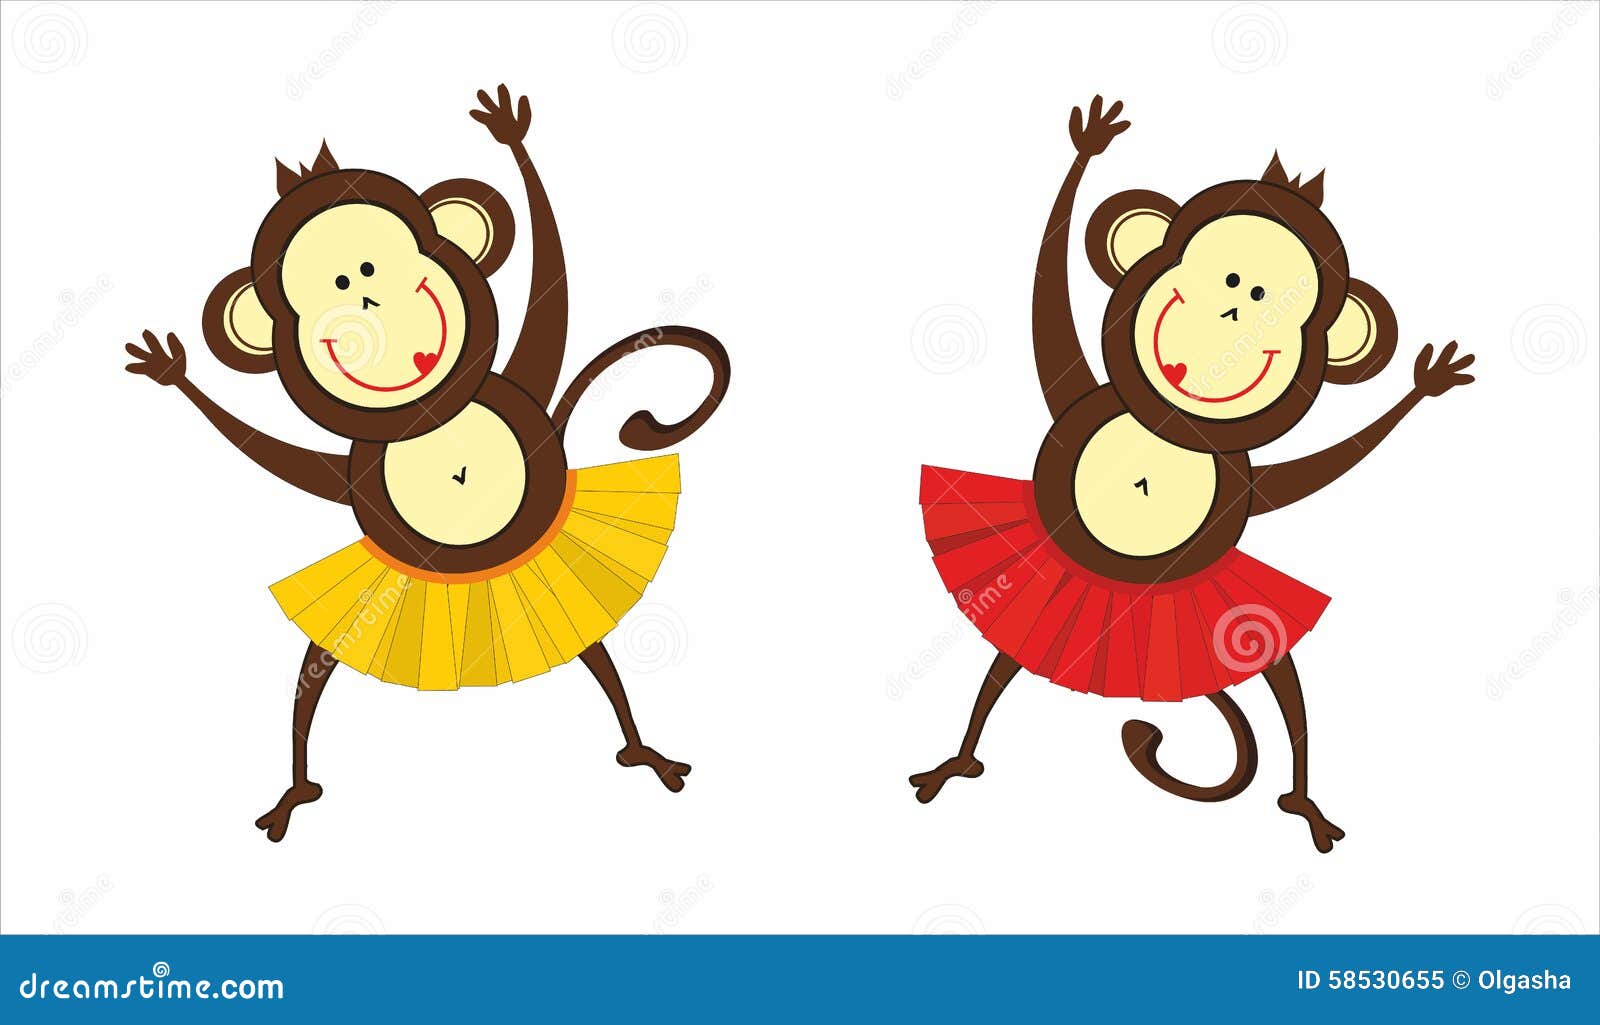 Monkeys Dance Stock Illustrations – 53 Monkeys Dance Stock Illustrations,  Vectors & Clipart - Dreamstime